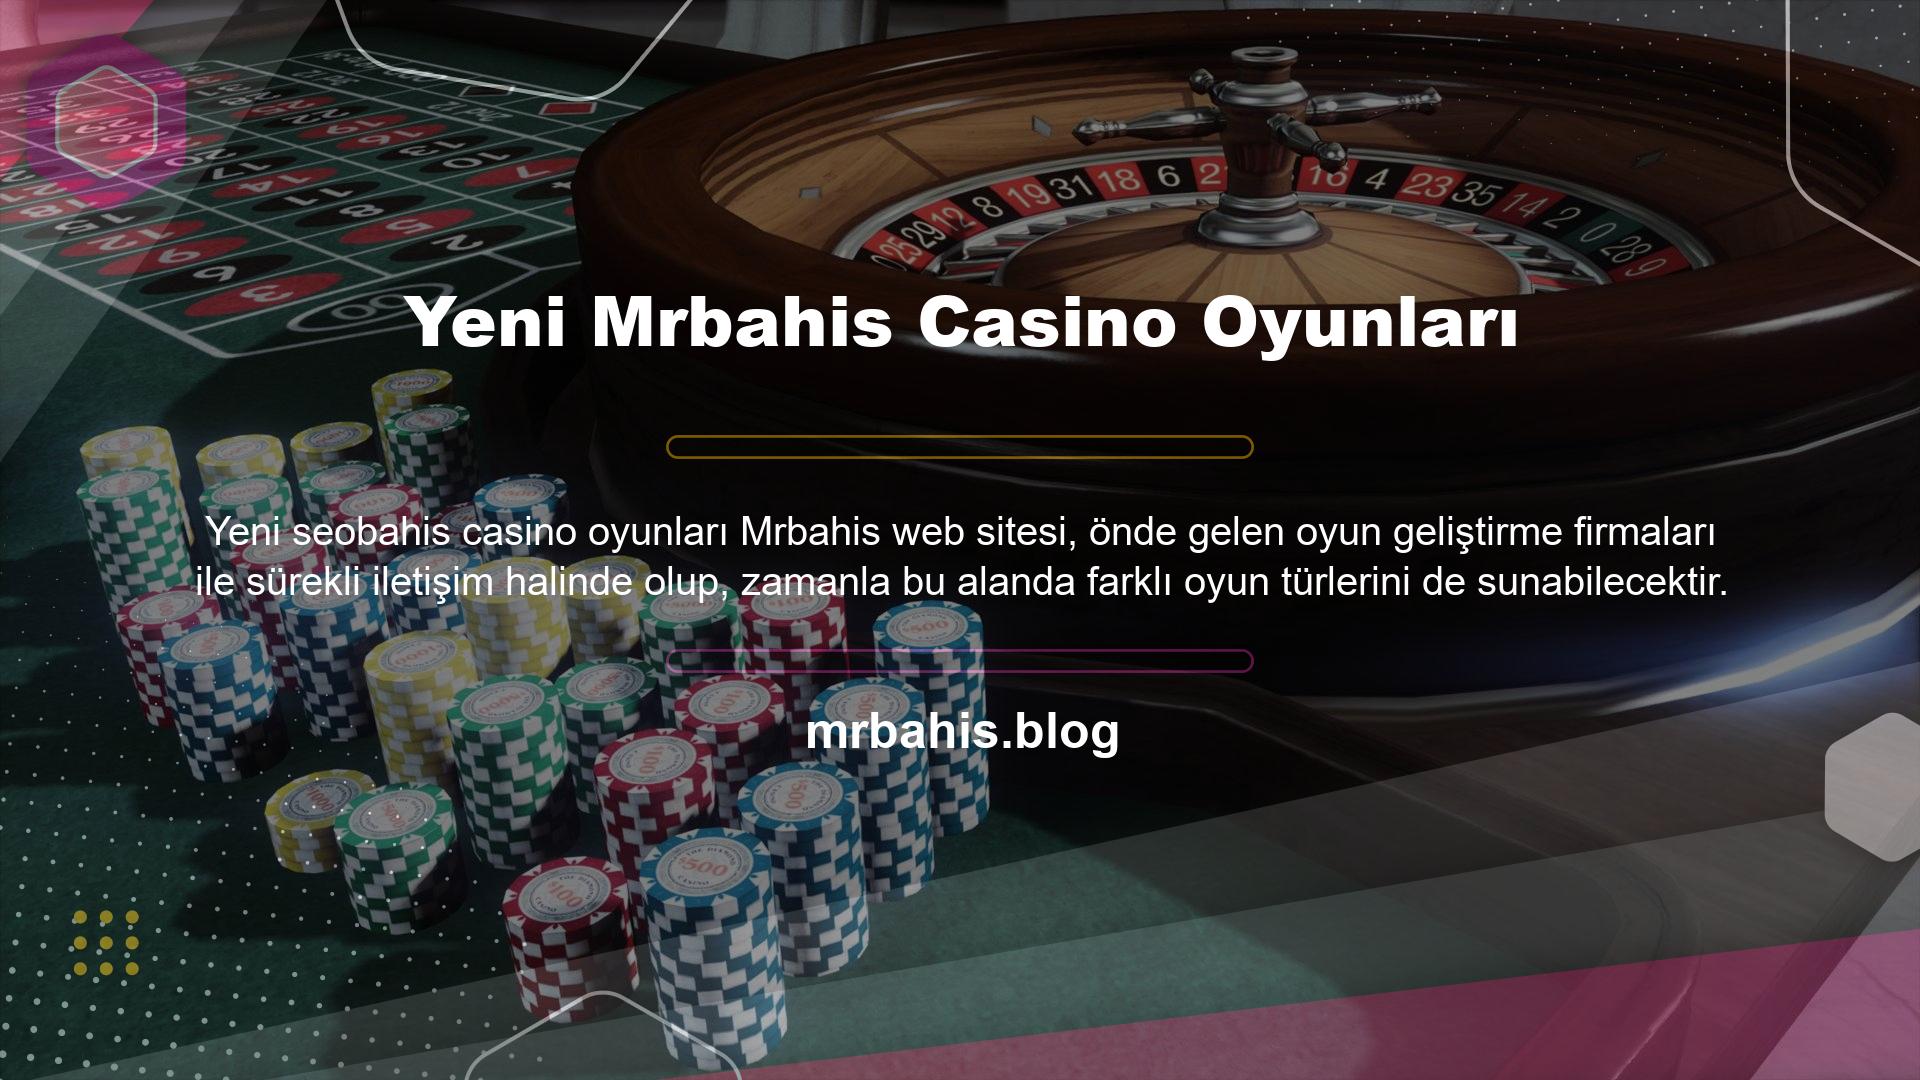 Bu bağlamda Yeni Mrbahis Casino Oyunları çeşitli sosyal kanalları kullanarak sürekli duyurular yapabilir